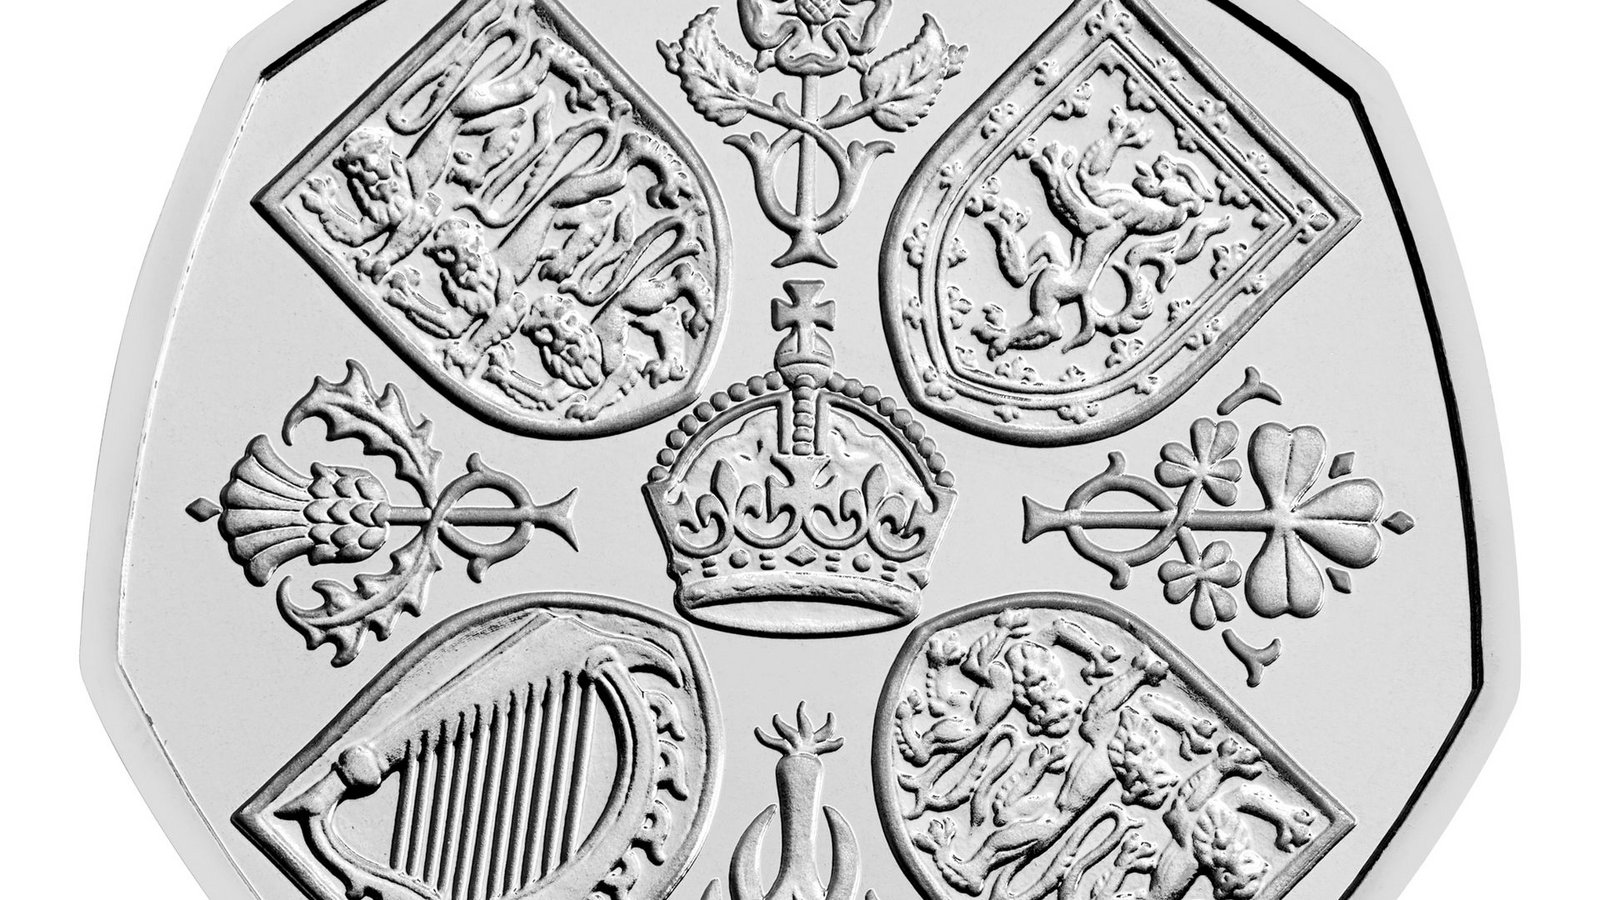 Die Rückseite der neuen 50-Pence-Münze erinnert an das Leben und Vermächtnis von Königin Elizabeth II.Foto: The Royal Mint/PA Media/dpa